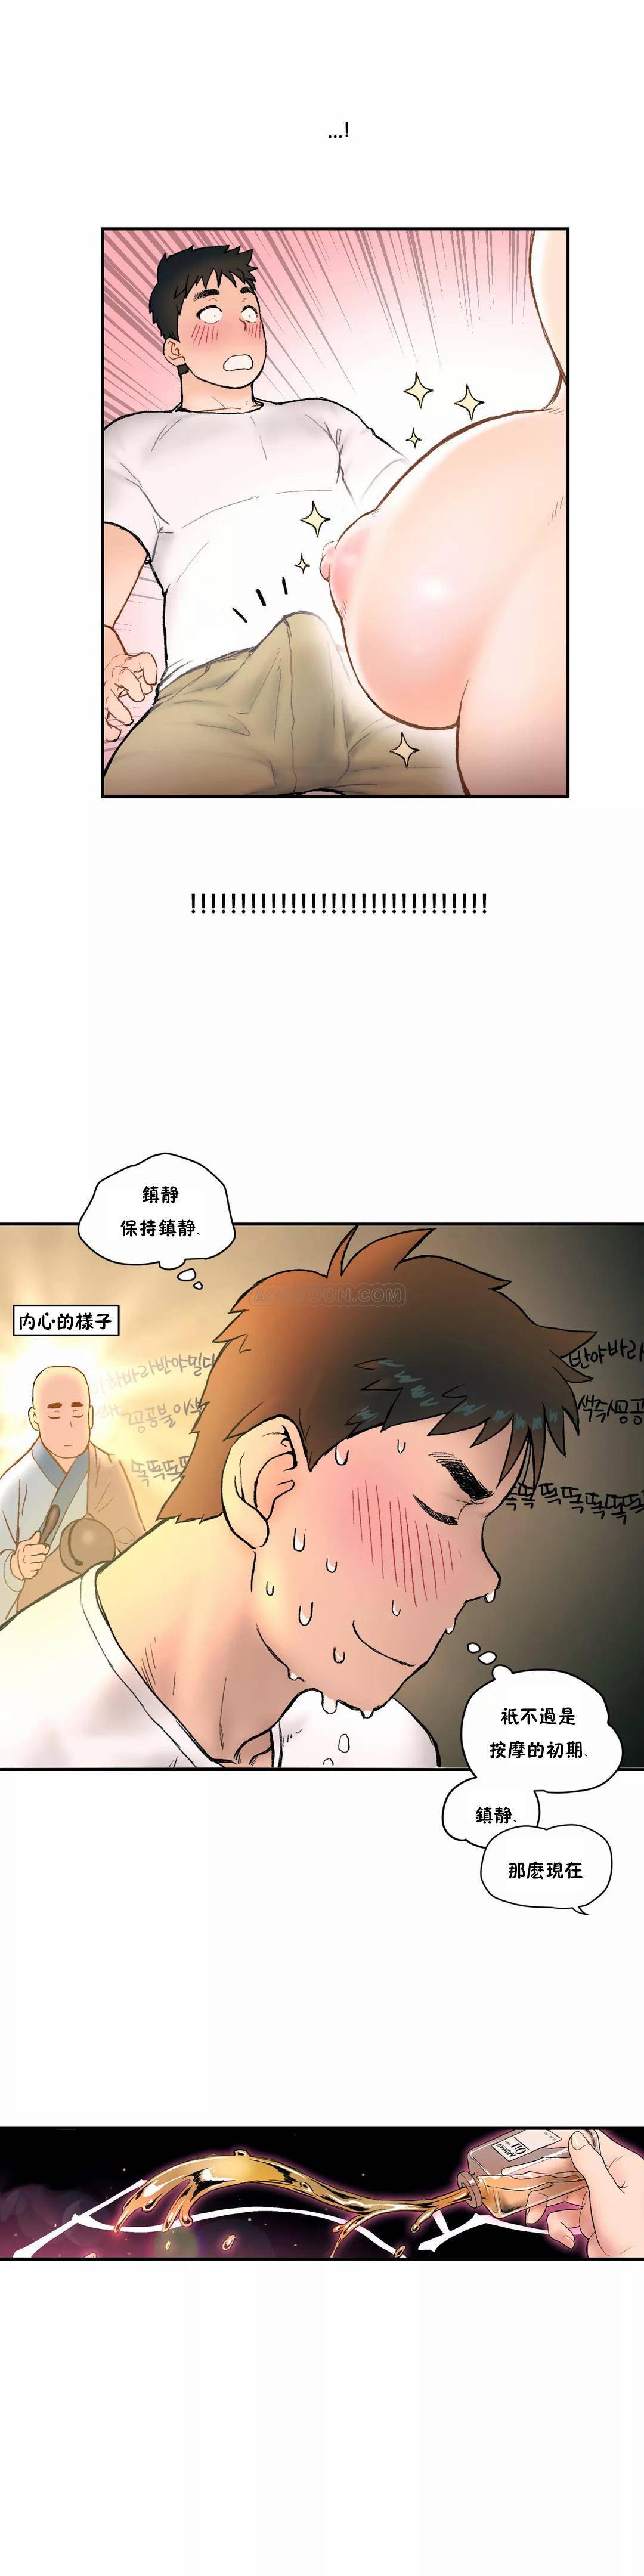 韩国污漫画 非常運動 第3话 10